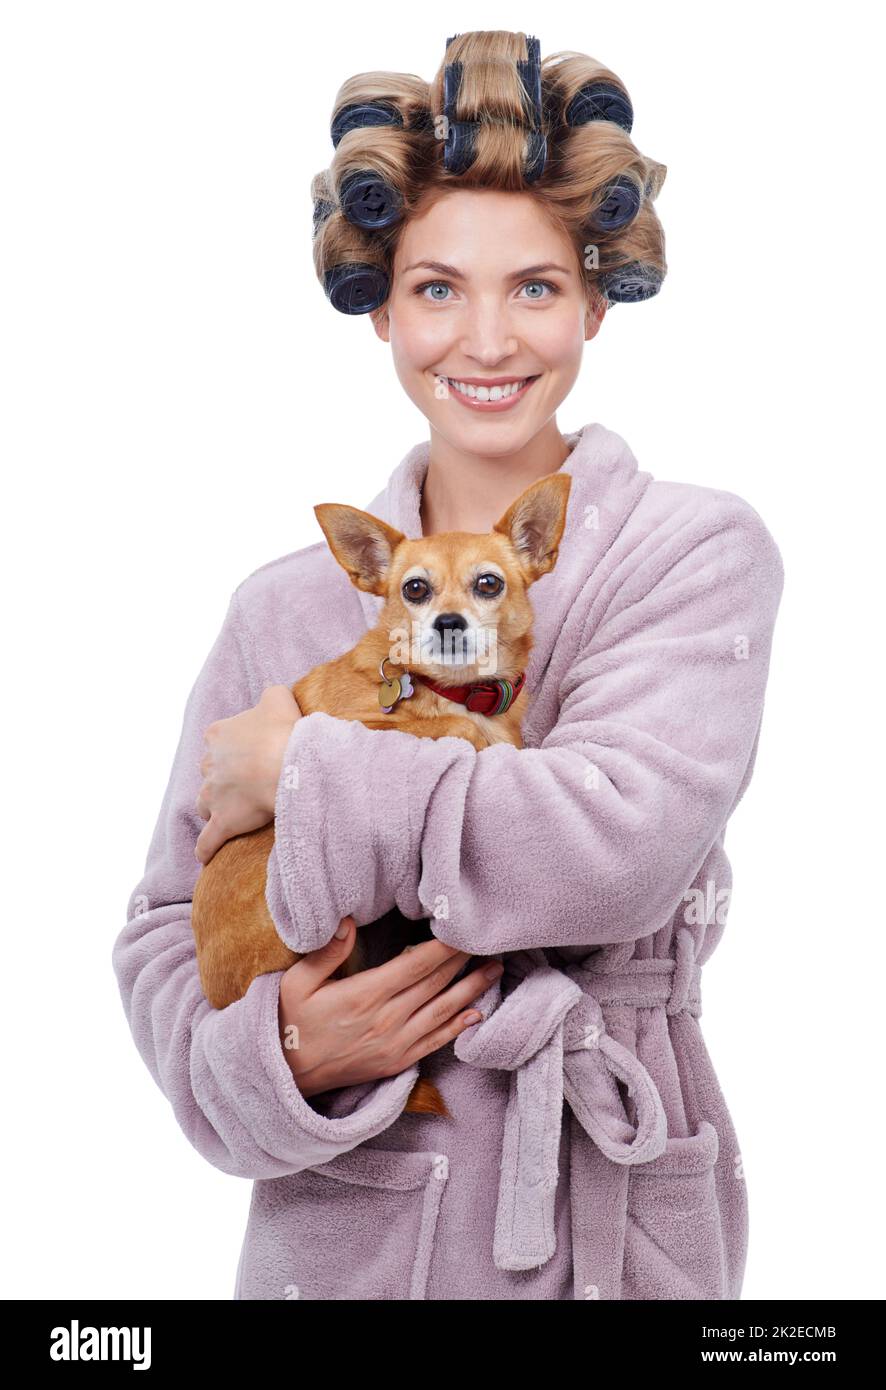 La doccia era fresca. Ritratto di una giovane donna felice che tiene il suo cane in piedi in un accappatoio. Foto Stock